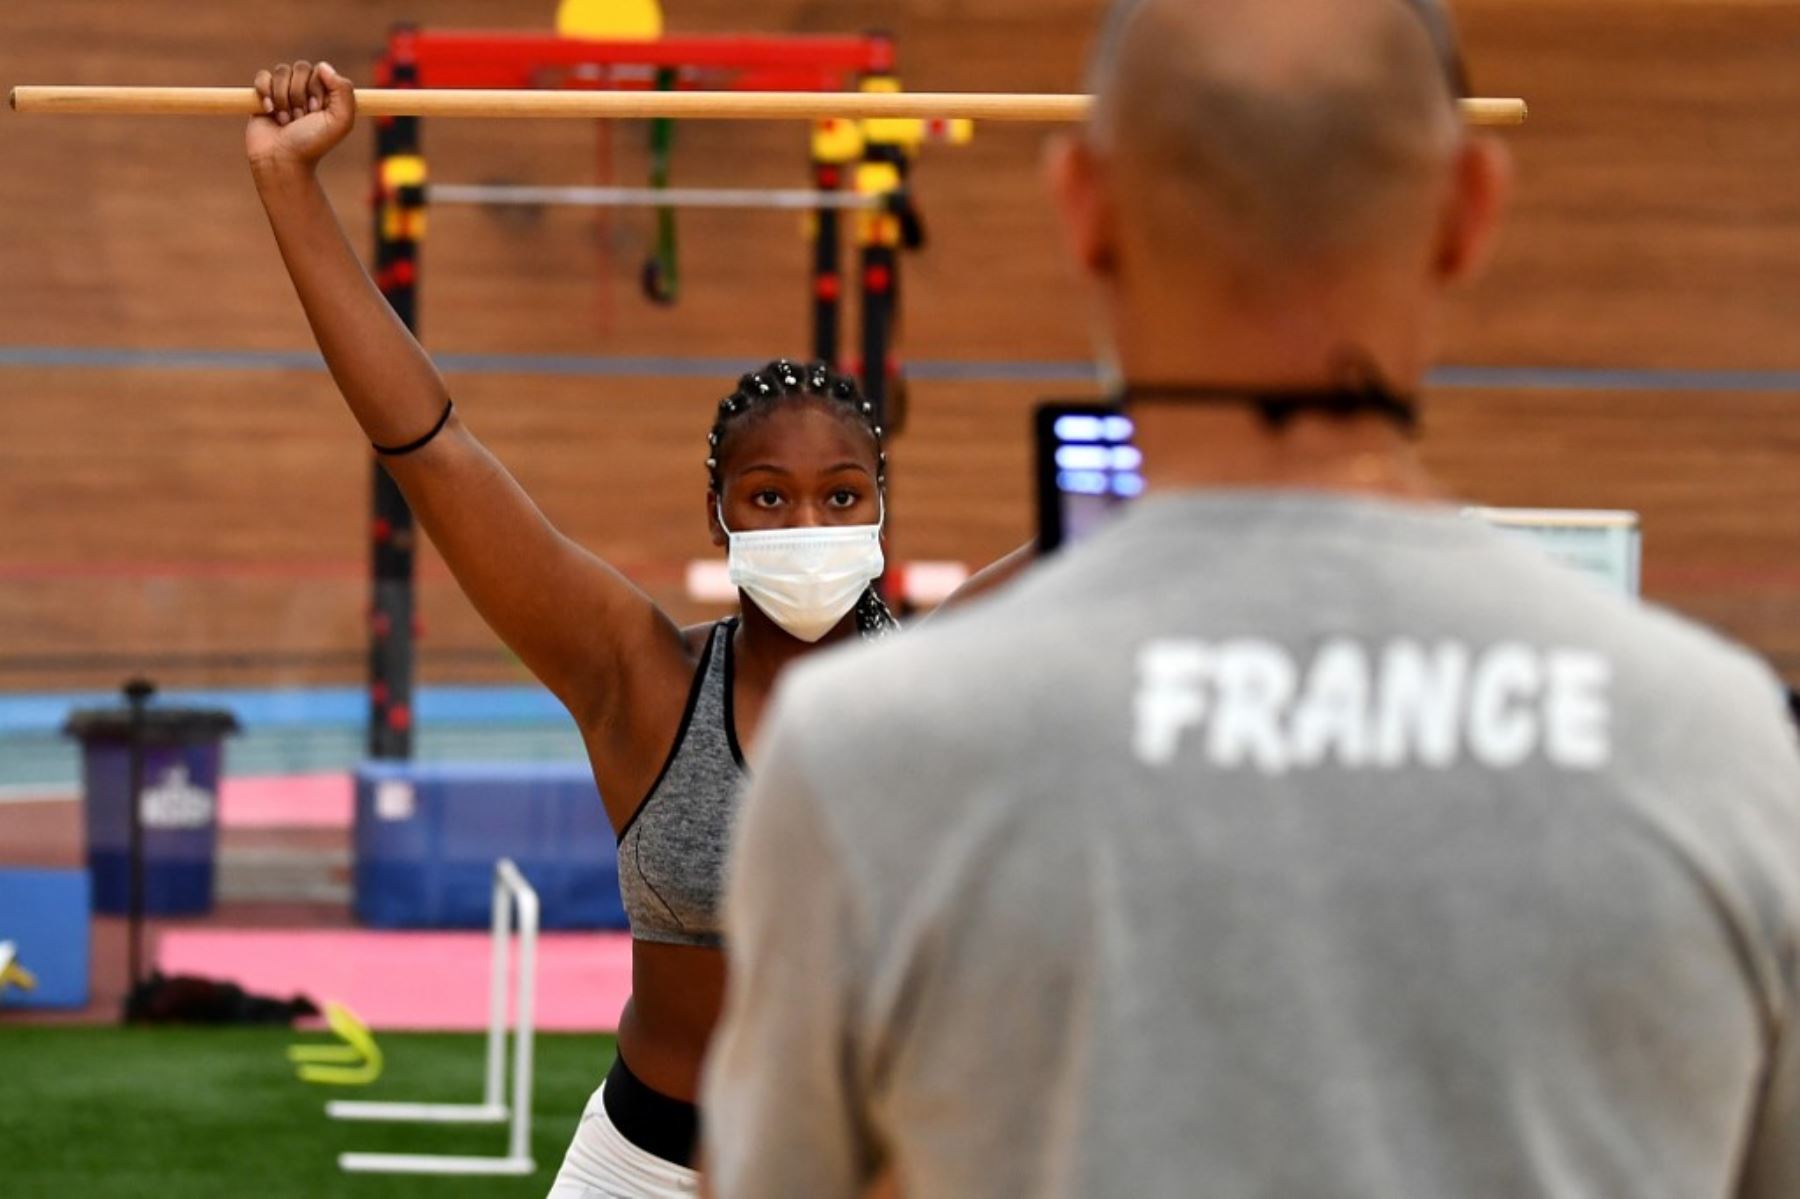 La boxeadora francesa, con una máscara protectora, asiste a una evaluación física completa y chequeos antes de participar en la primera sesión de entrenamiento. Foto: AFP